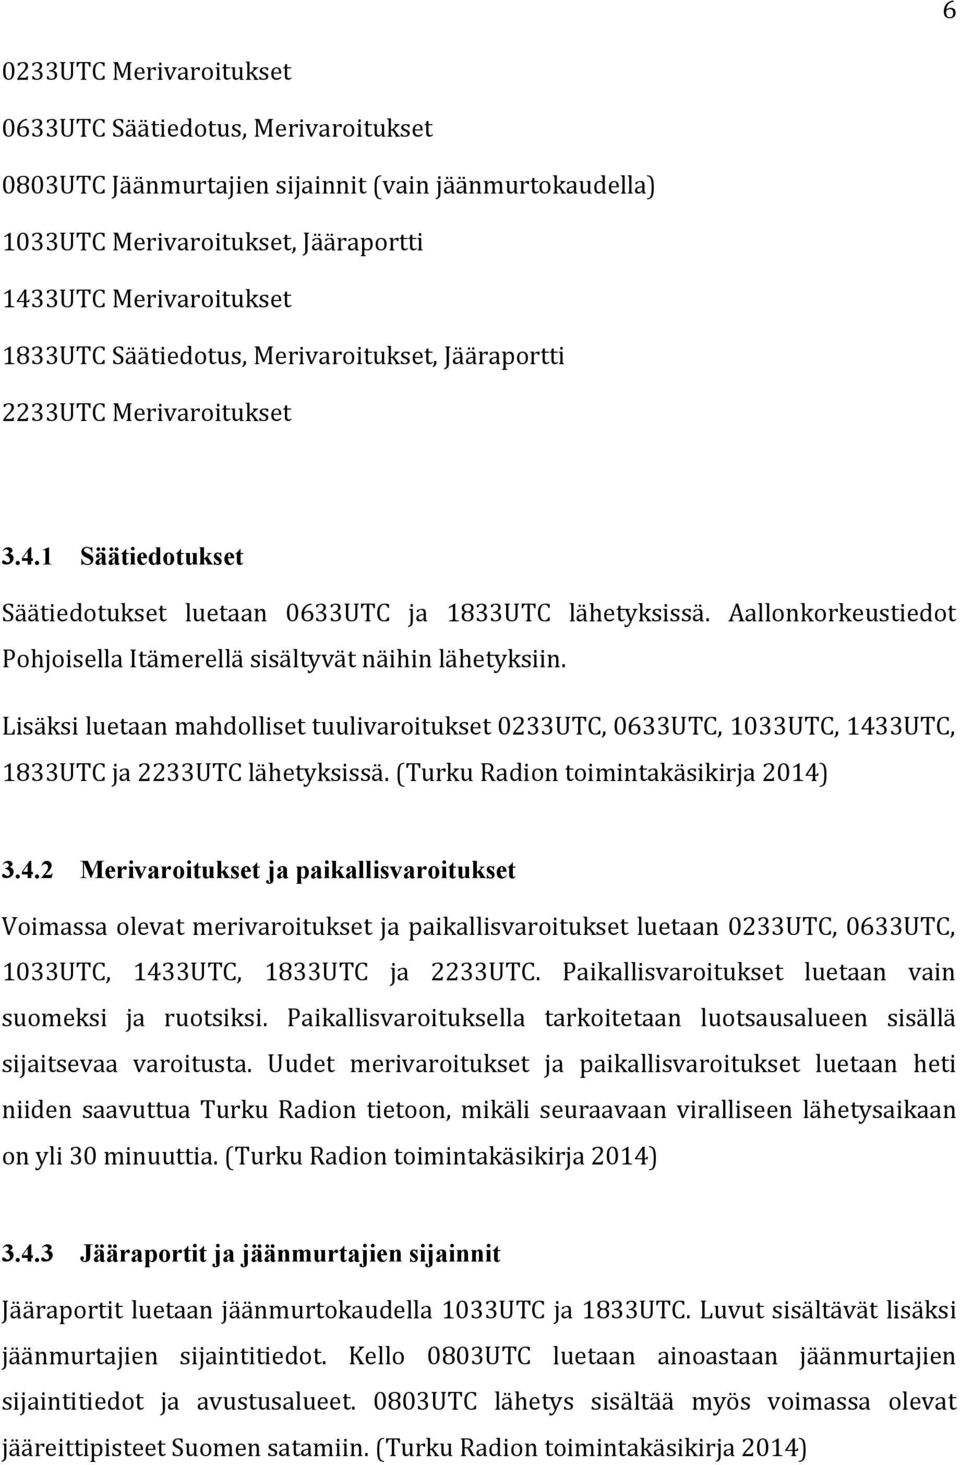 Aallonkorkeustiedot Pohjoisella Itämerellä sisältyvät näihin lähetyksiin. Lisäksi luetaan mahdolliset tuulivaroitukset 0233UTC, 0633UTC, 1033UTC, 1433UTC, 1833UTC ja 2233UTC lähetyksissä.